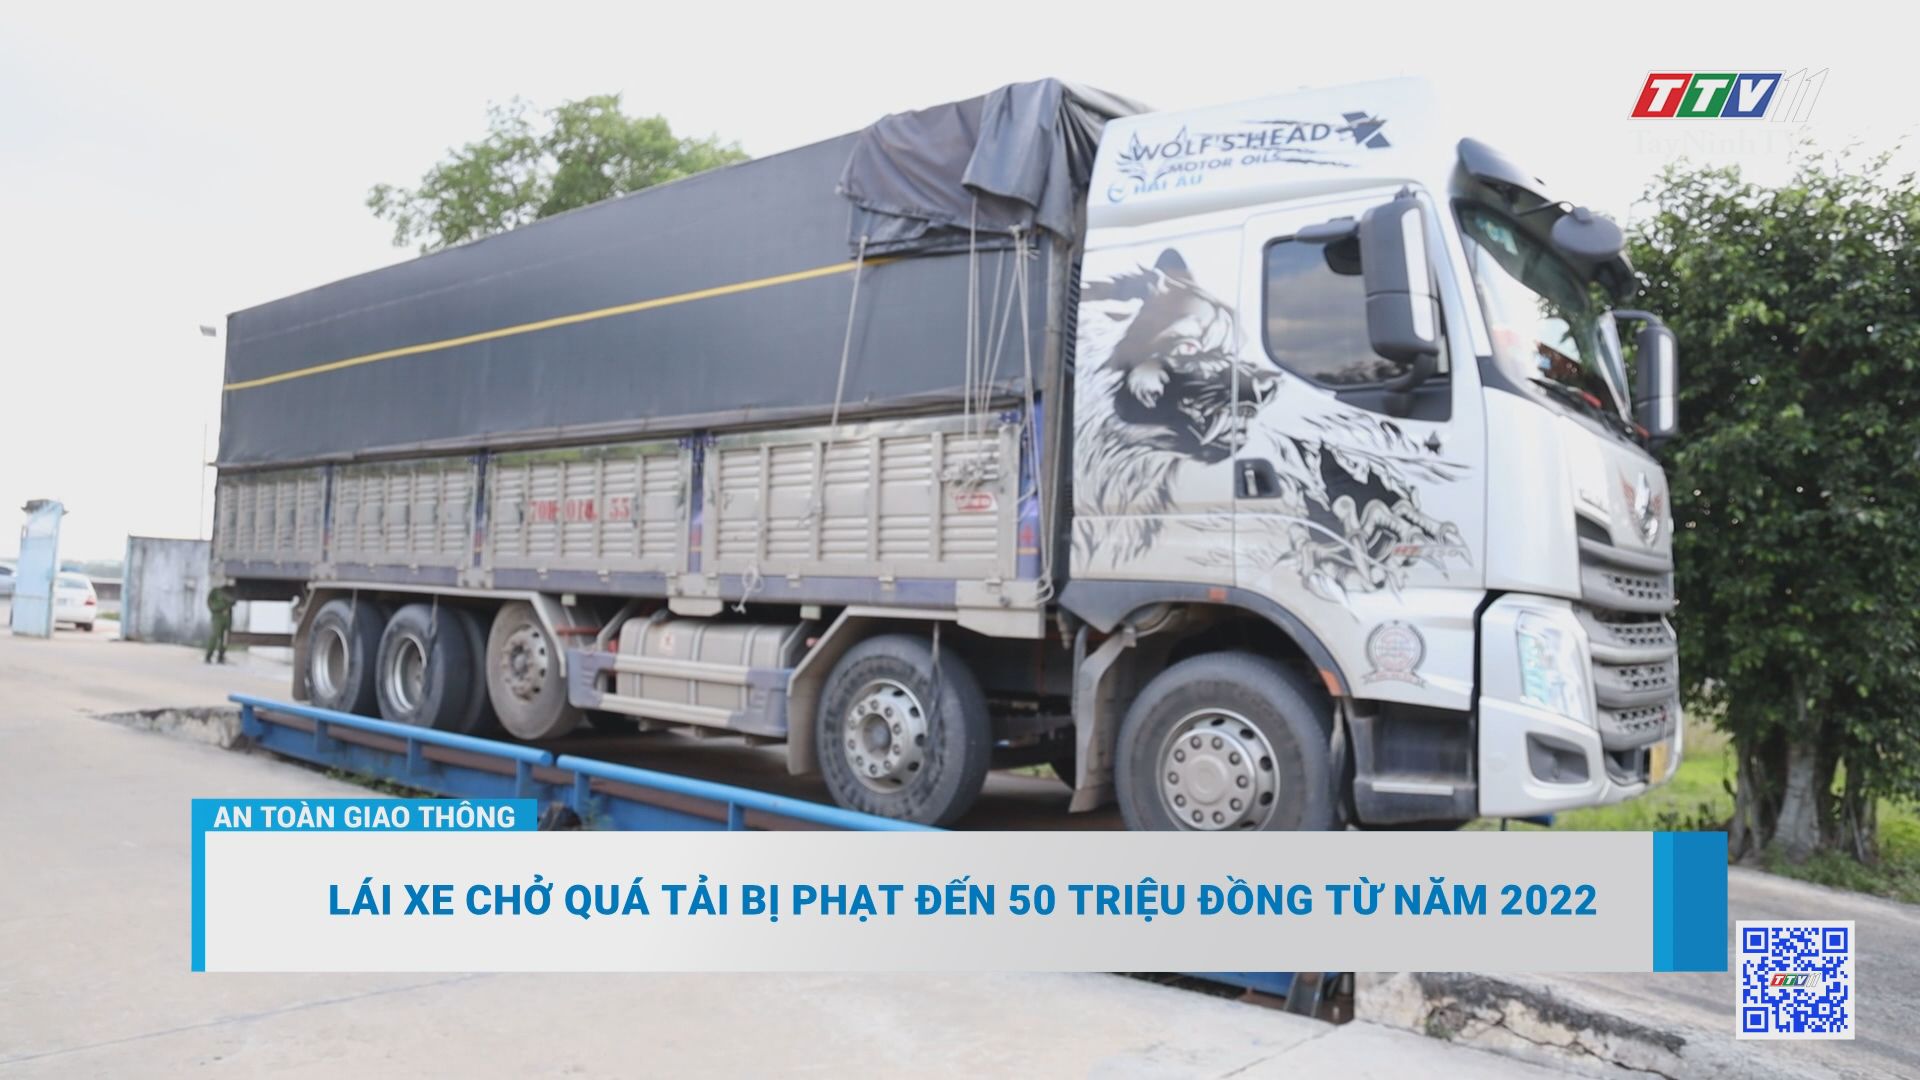 Lái xe chở quá tải bị phạt đến 50 triệu đồng từ năm 2022 | AN TOÀN GIAO THÔNG | TayNinhTV